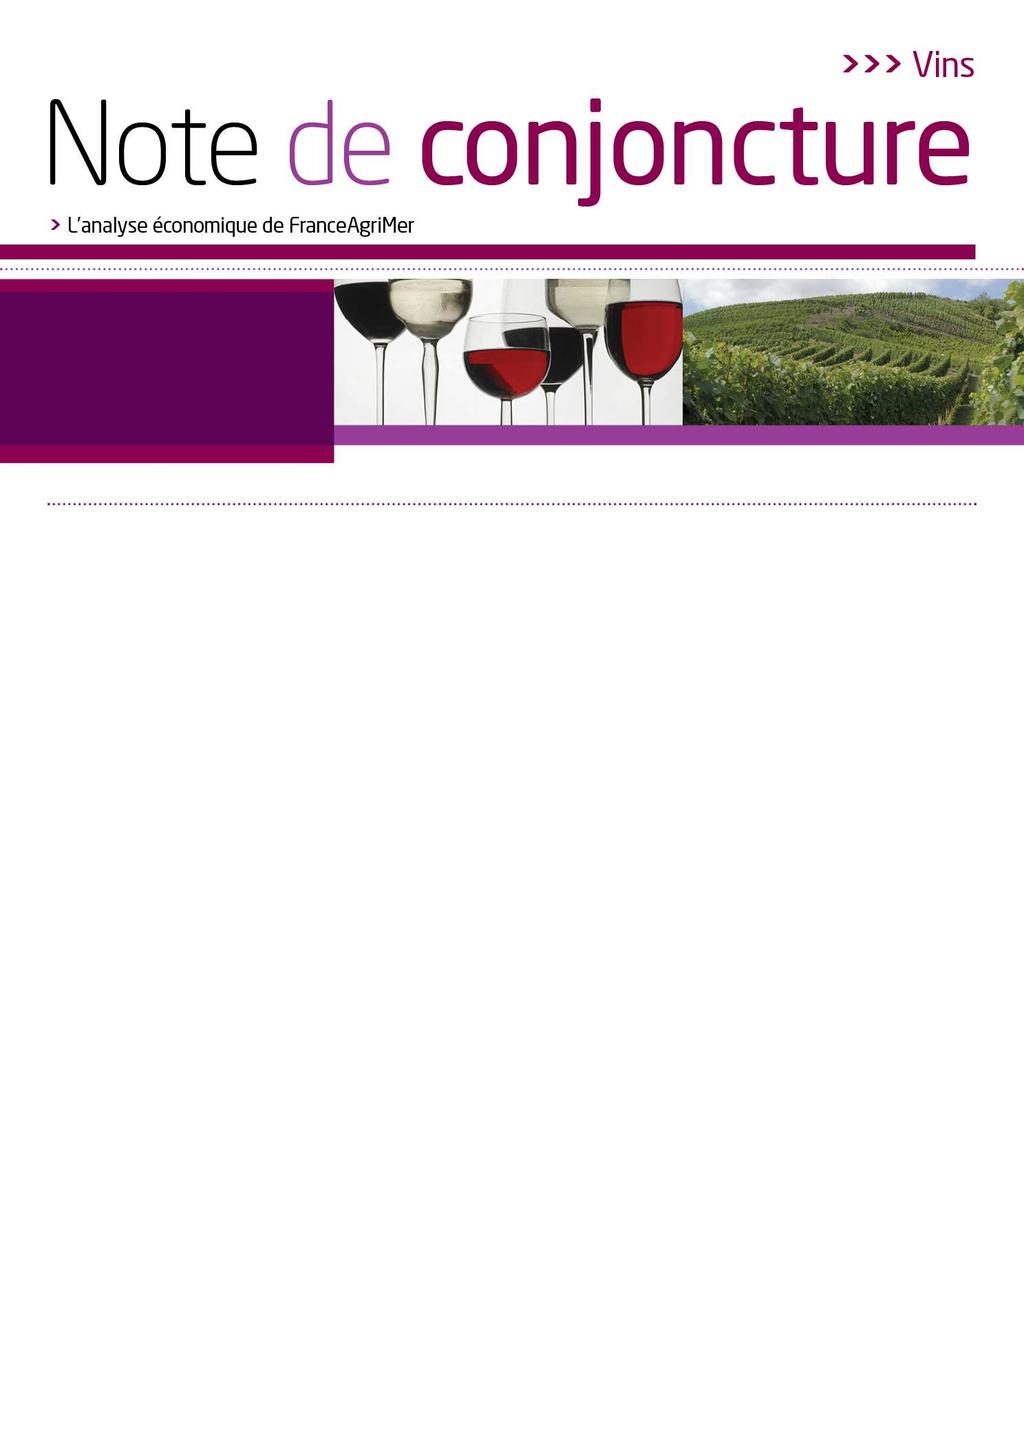 Avril 6 Marchés à la production vrac -6 Volumes cumulés depuis le /6 début de la campagne* en hl Rouges Rosés Blancs Total Vins de Vins de de cépages Total IGP IGP de cépages 8 (- %) 9 (-6 %) (+ %)